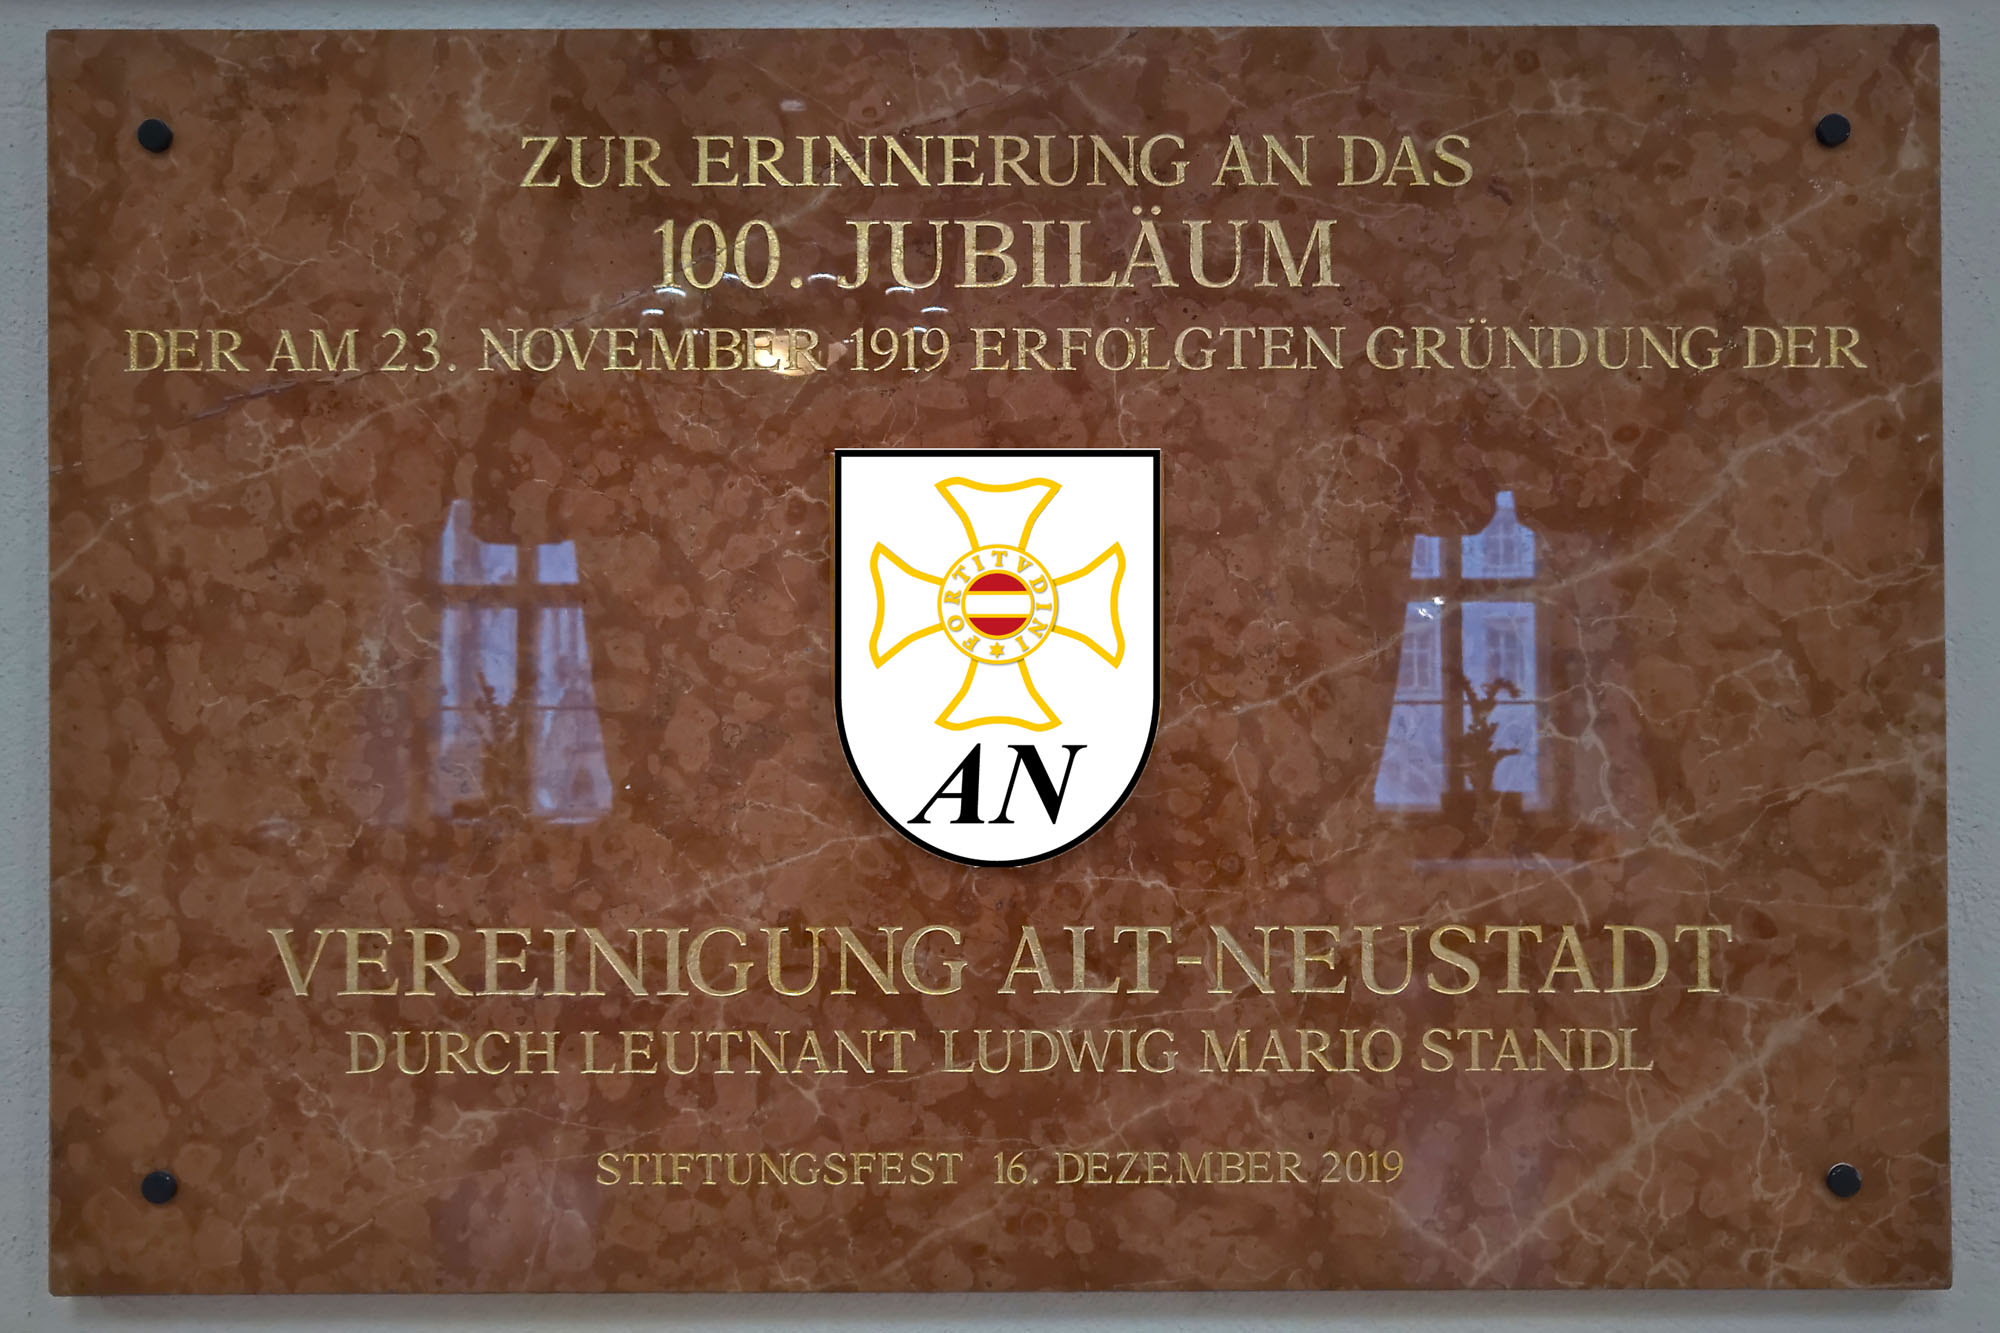 100 Jahre Alt-Neustadt und Stiftungsfest der TherMilAk